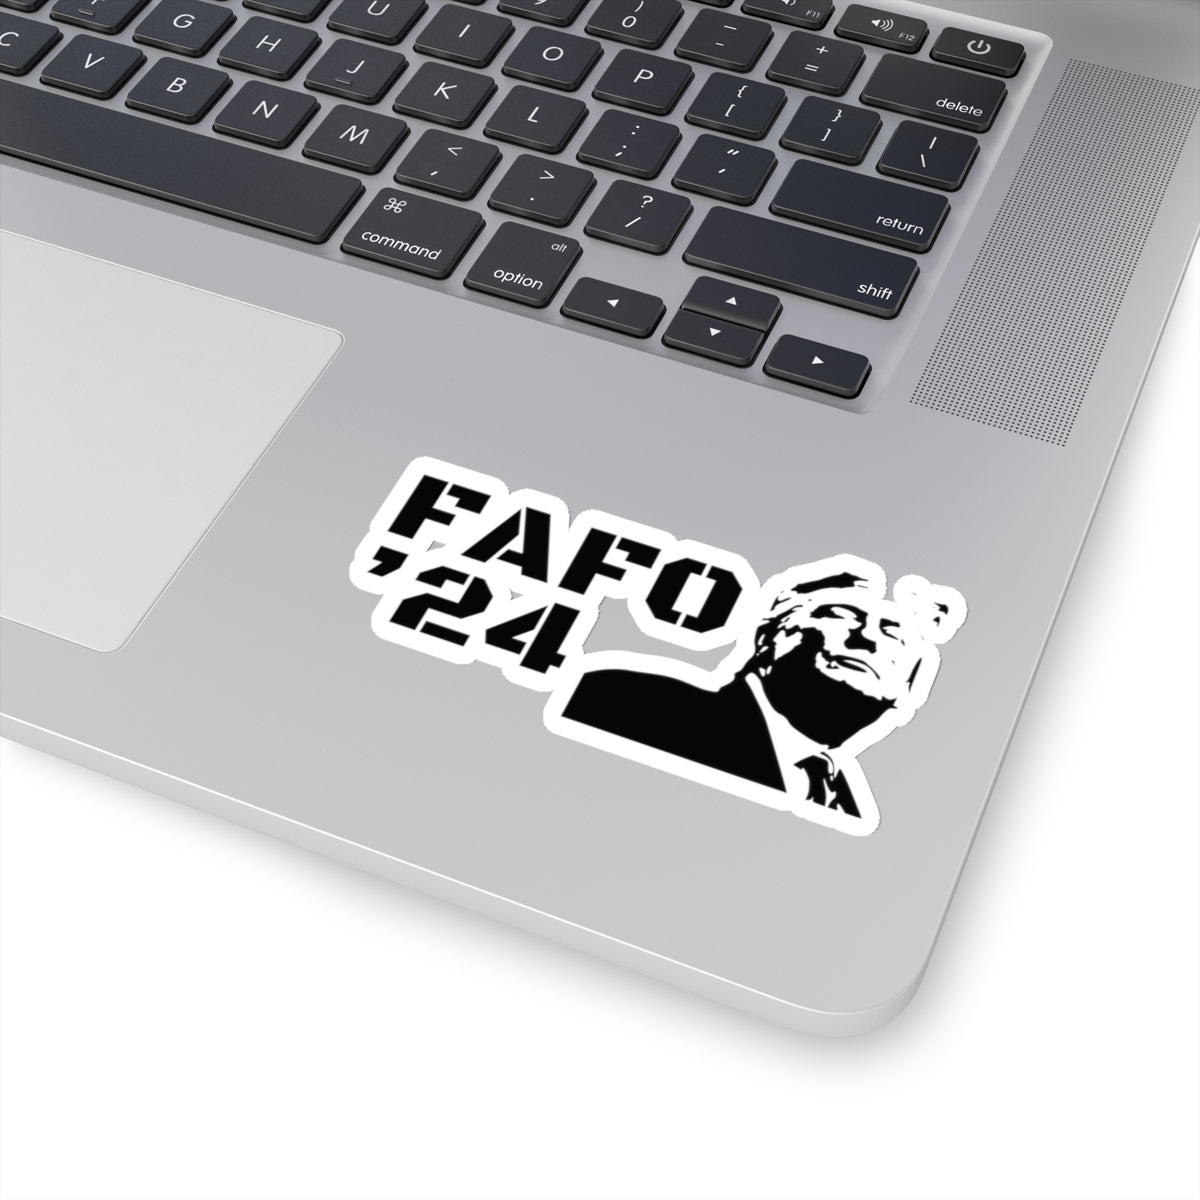 FAFO ‘24 TRUMP Image Stickers